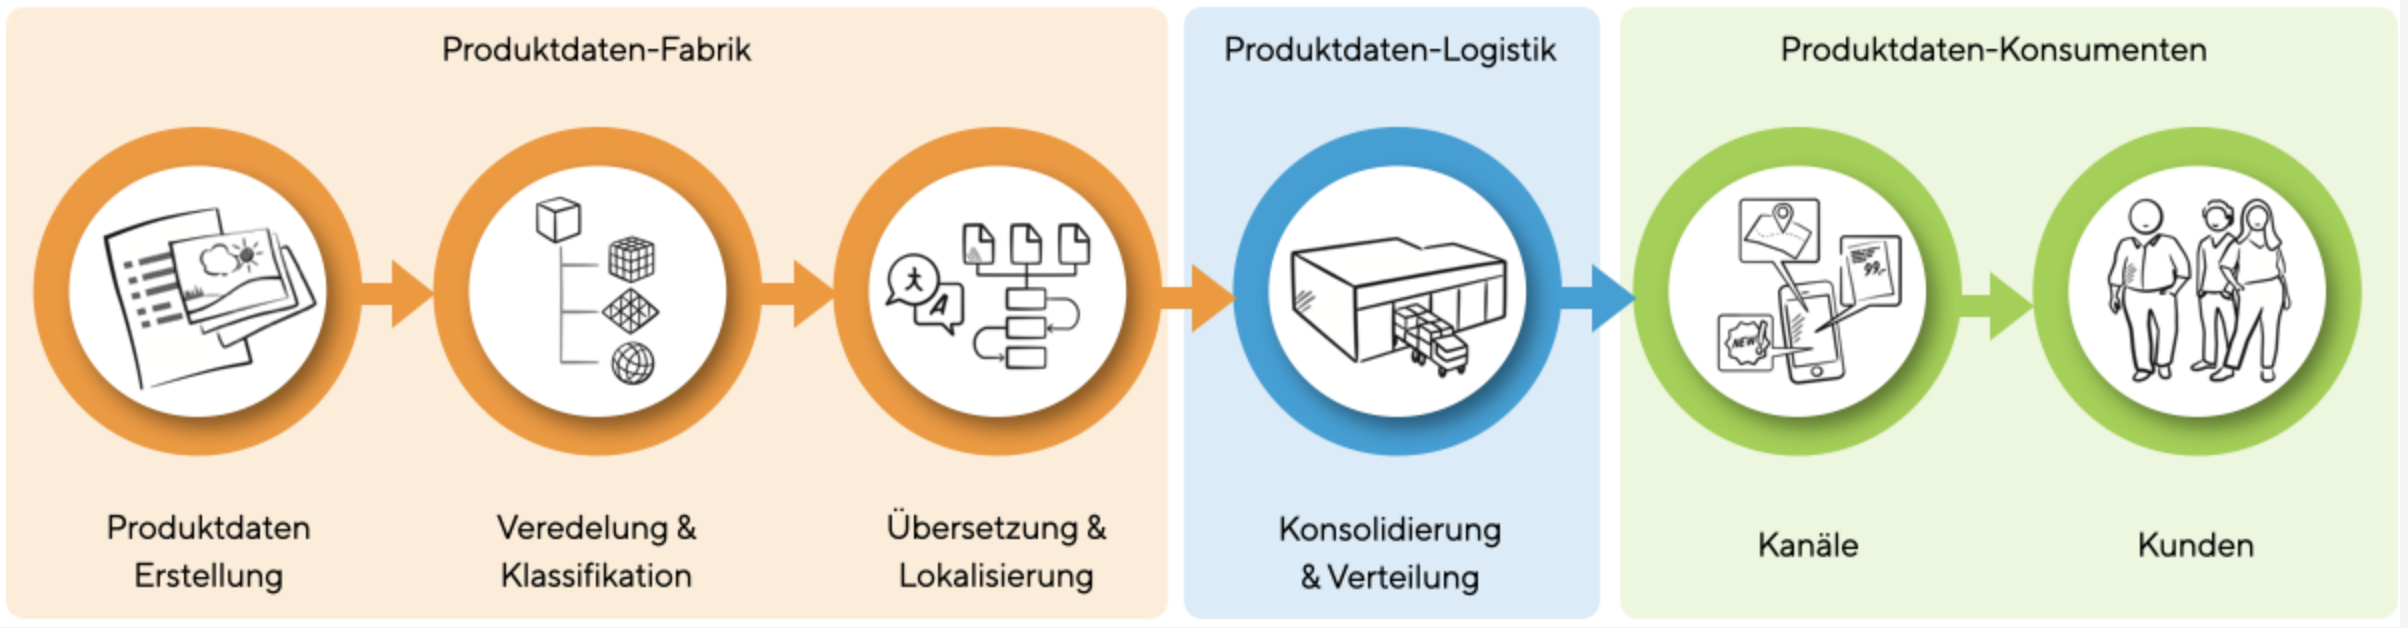 Die Produktdaten-Logistik im Kontext der digitalen Produktdaten Supply Chain